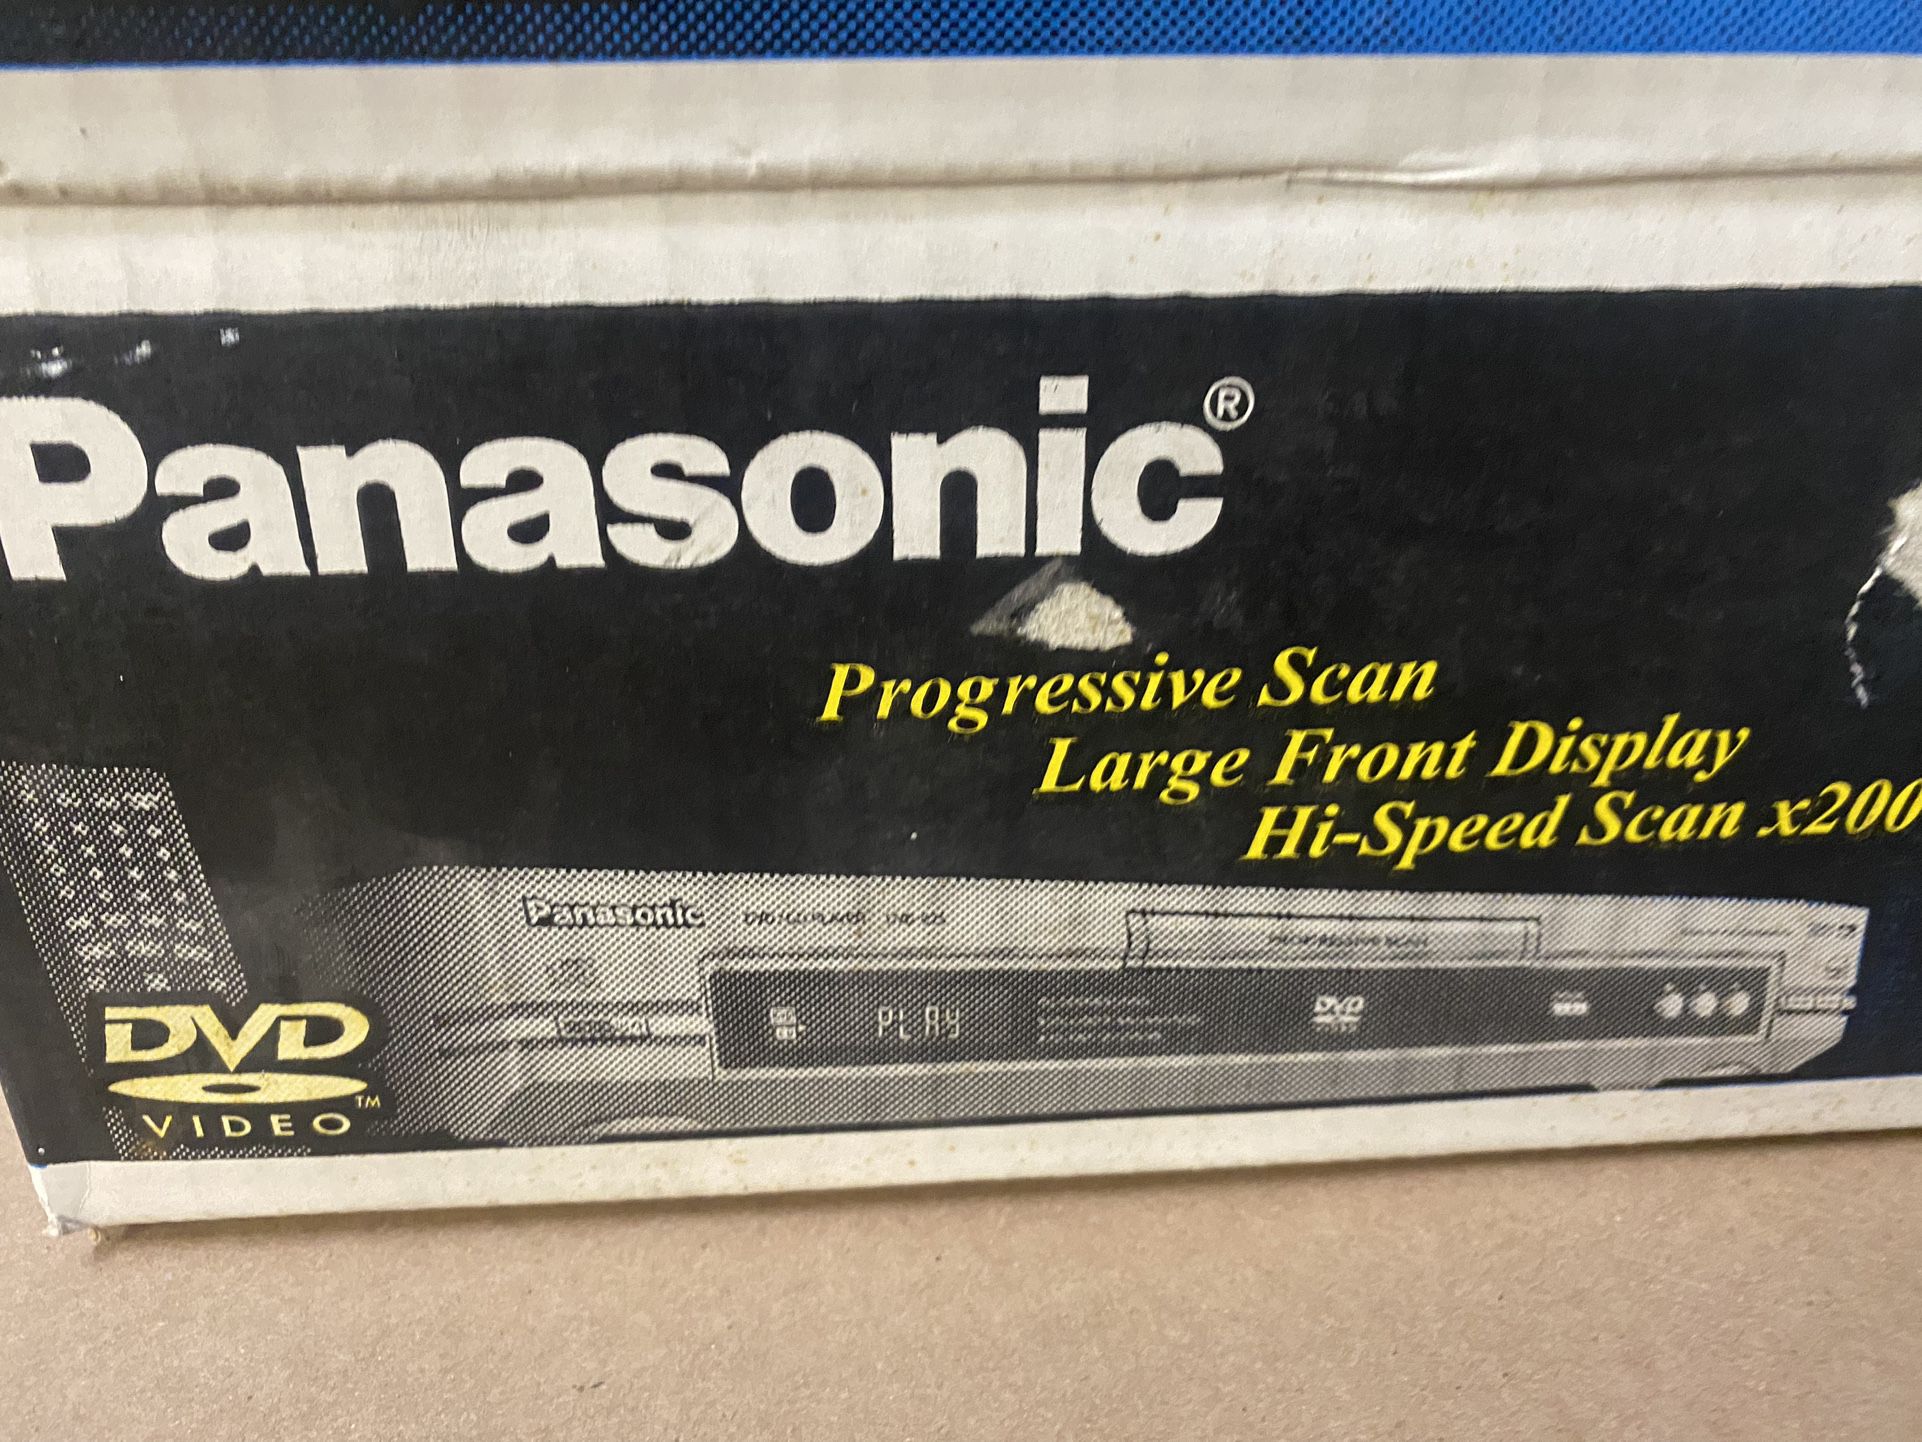 Panasonic DVD Player New In Box 